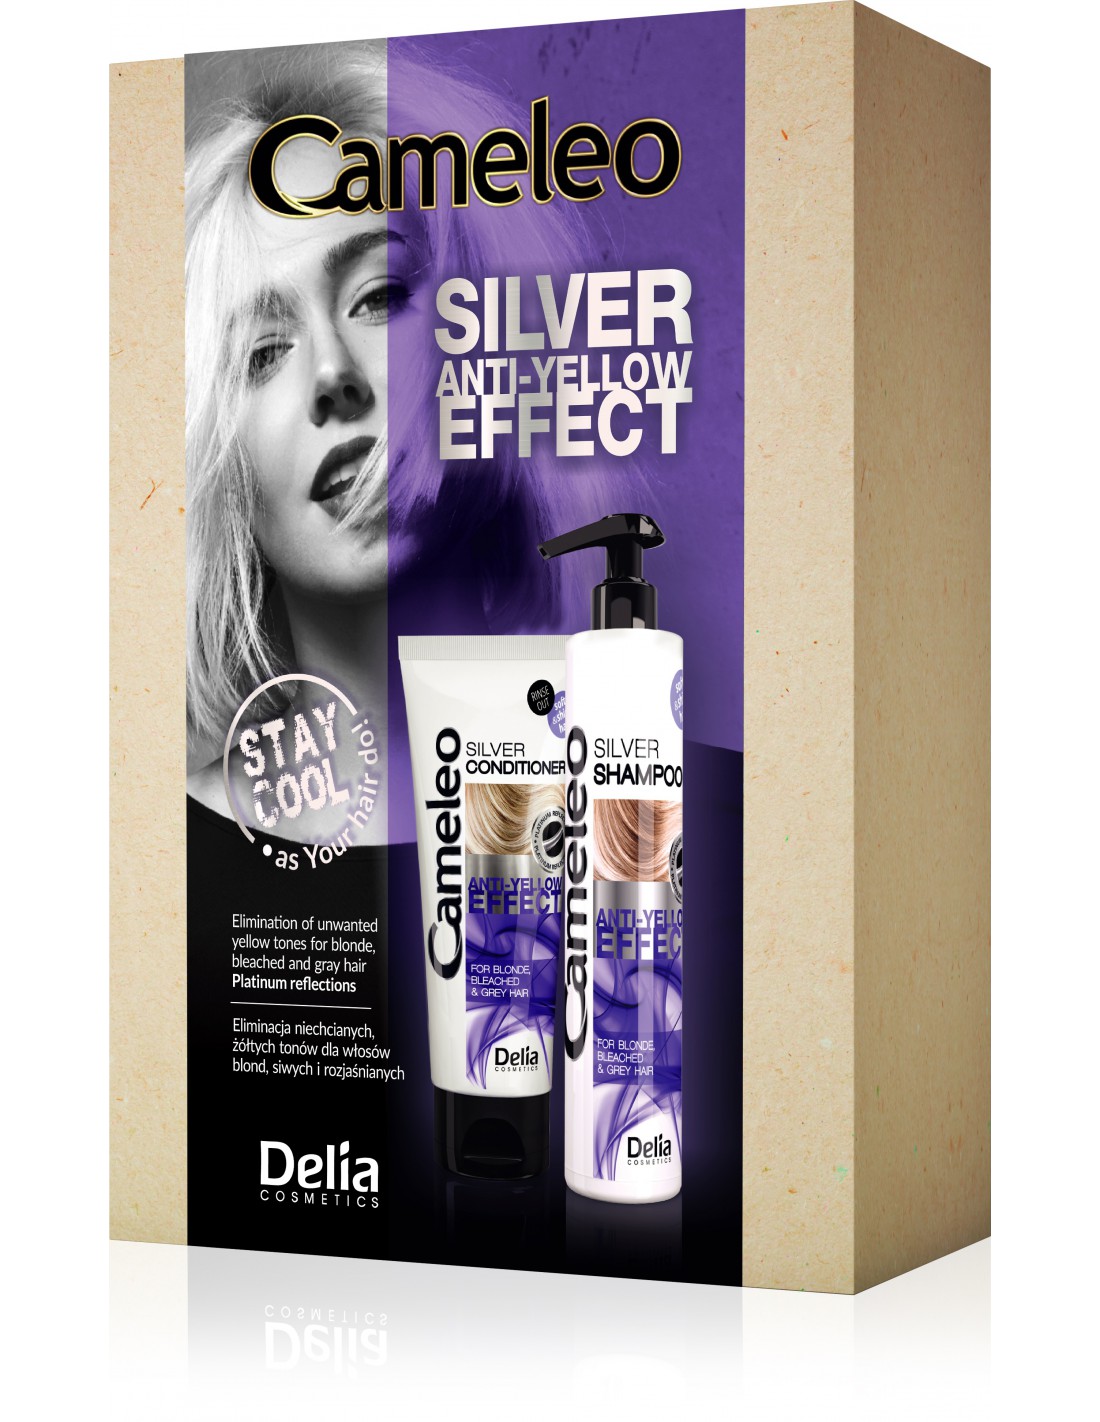 delia cameleo szampon do włosów blond i rozjaśnianych silver